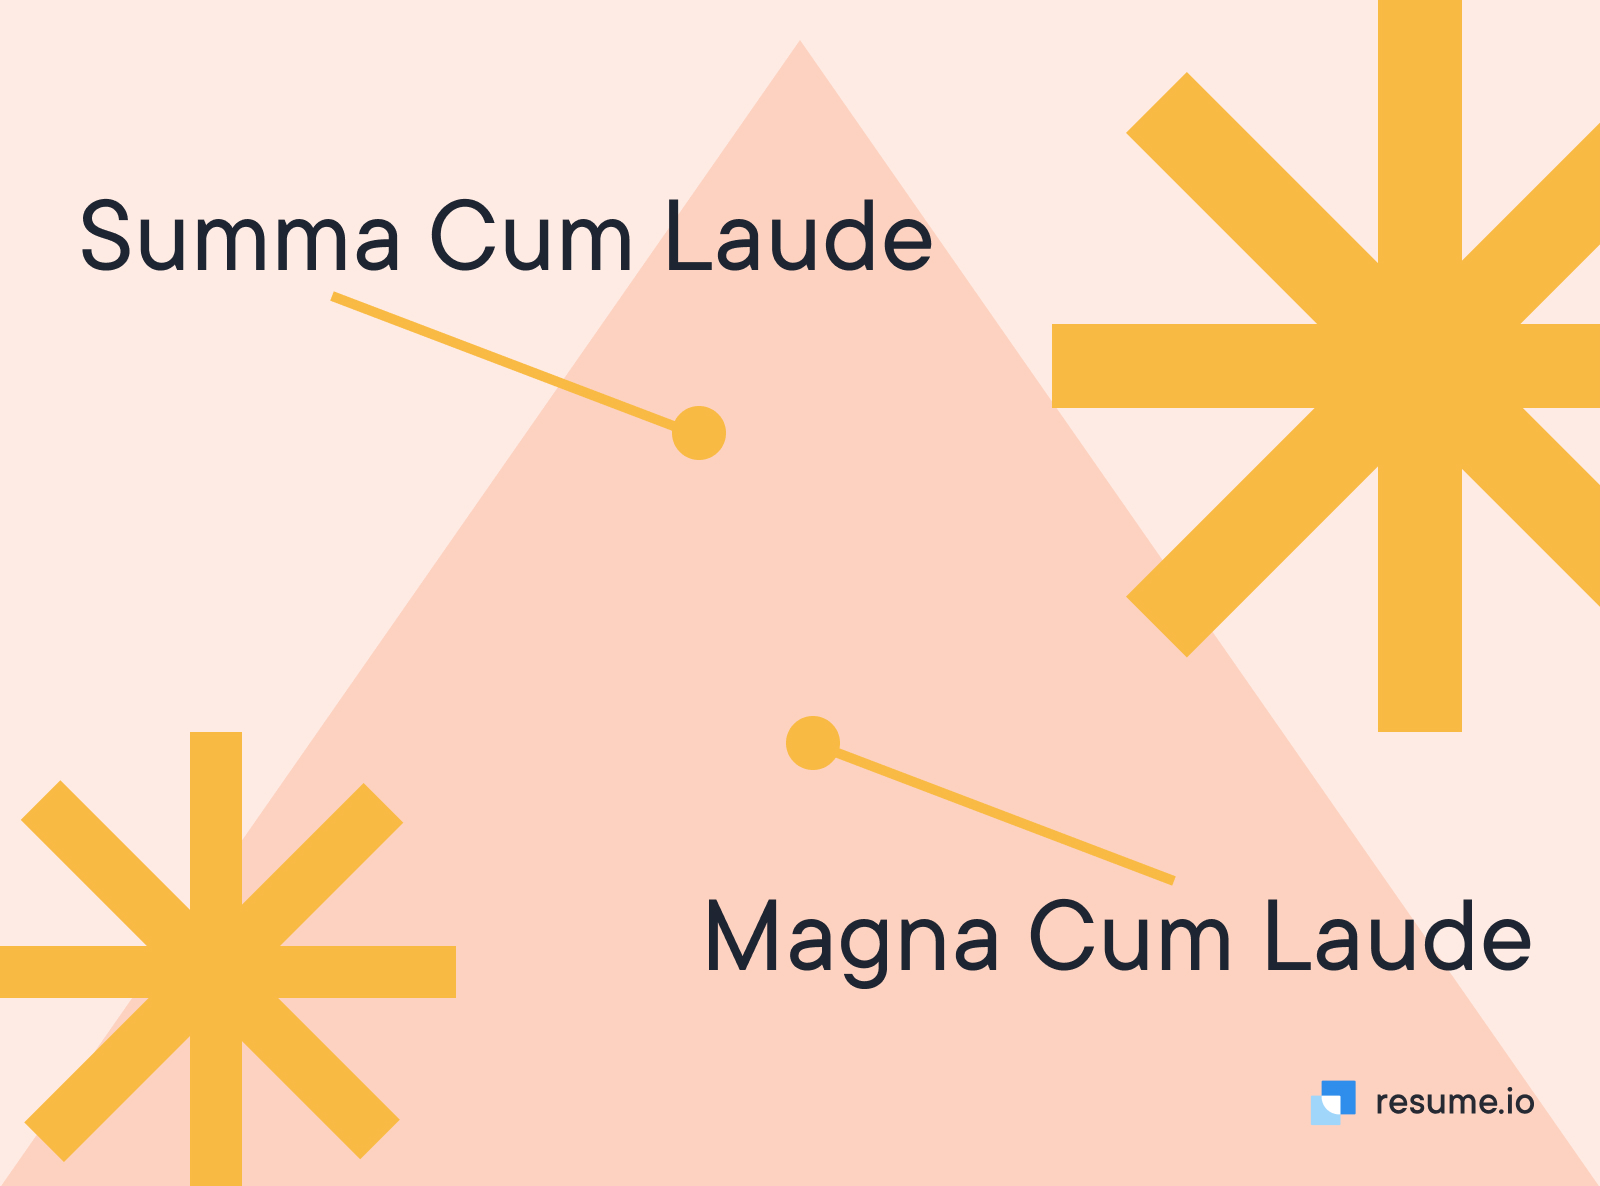 Magna cum laude is it worth it